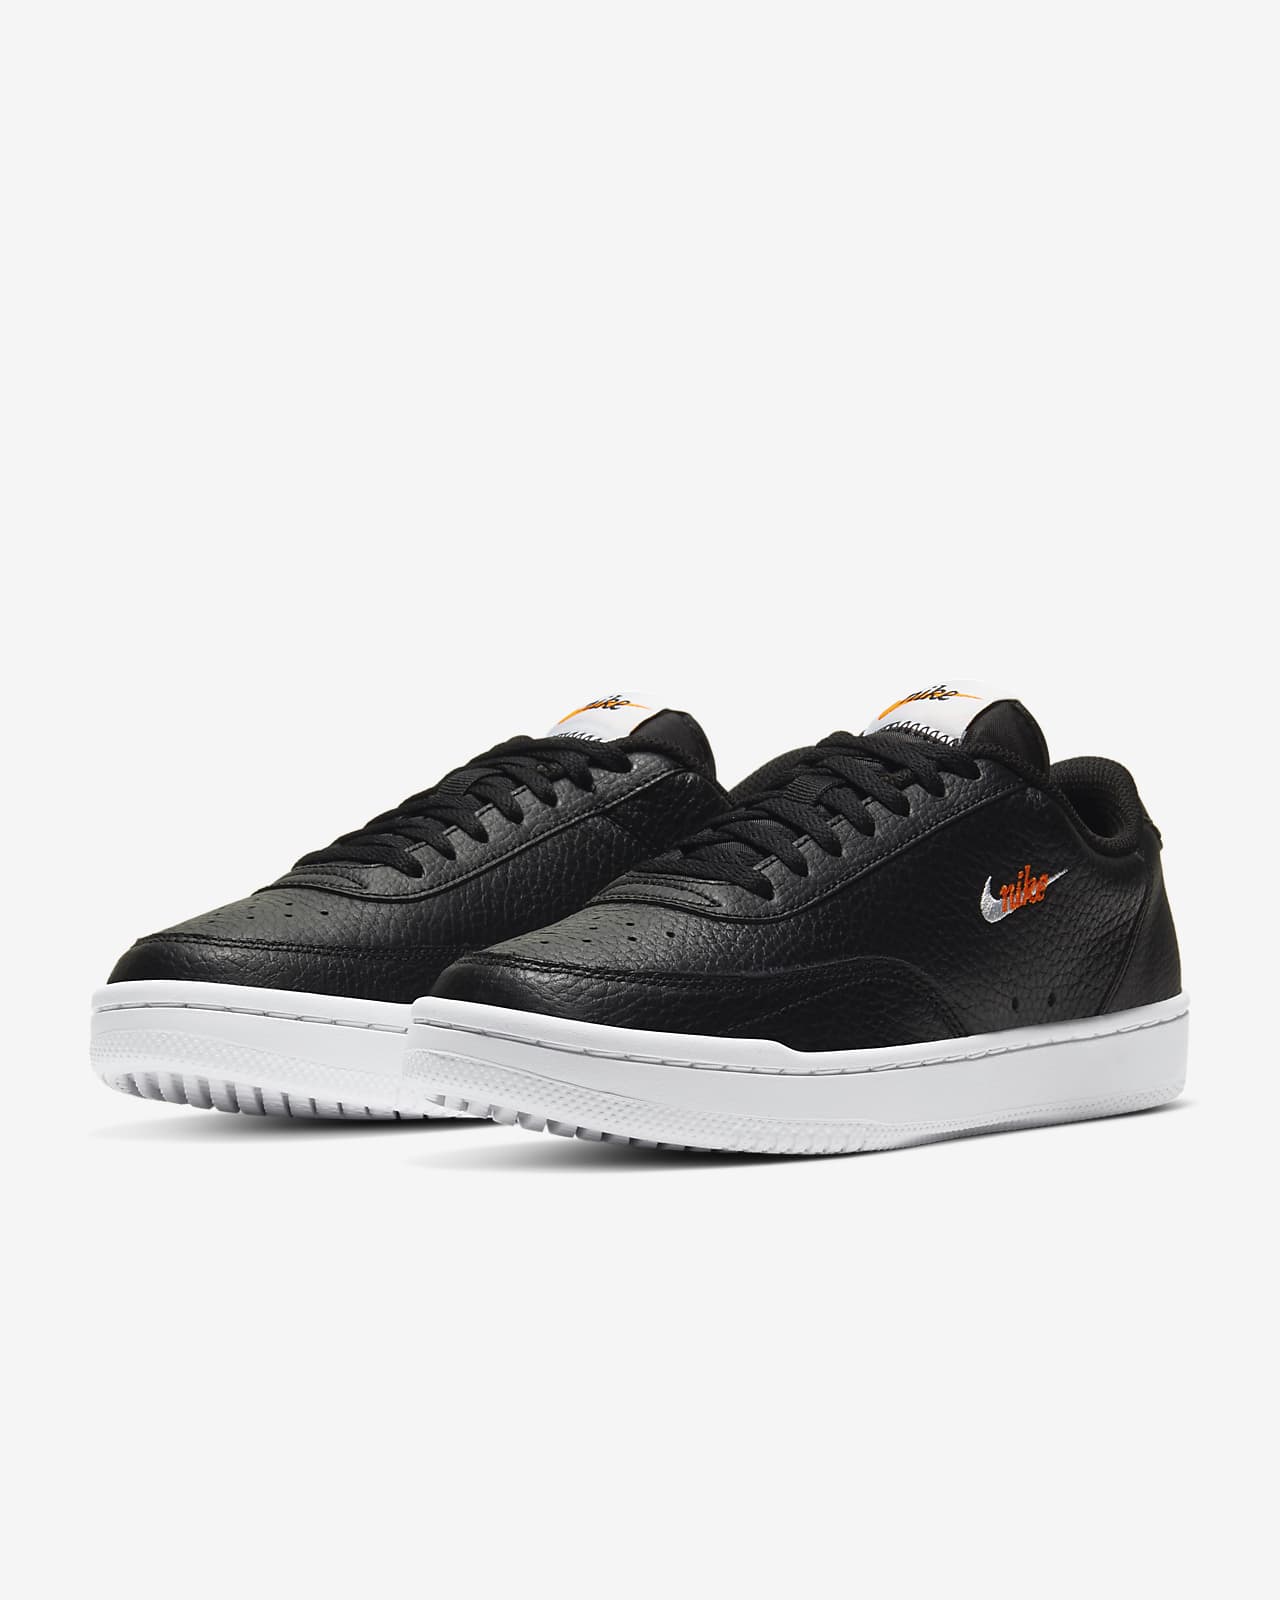 orange and black sneakers nike